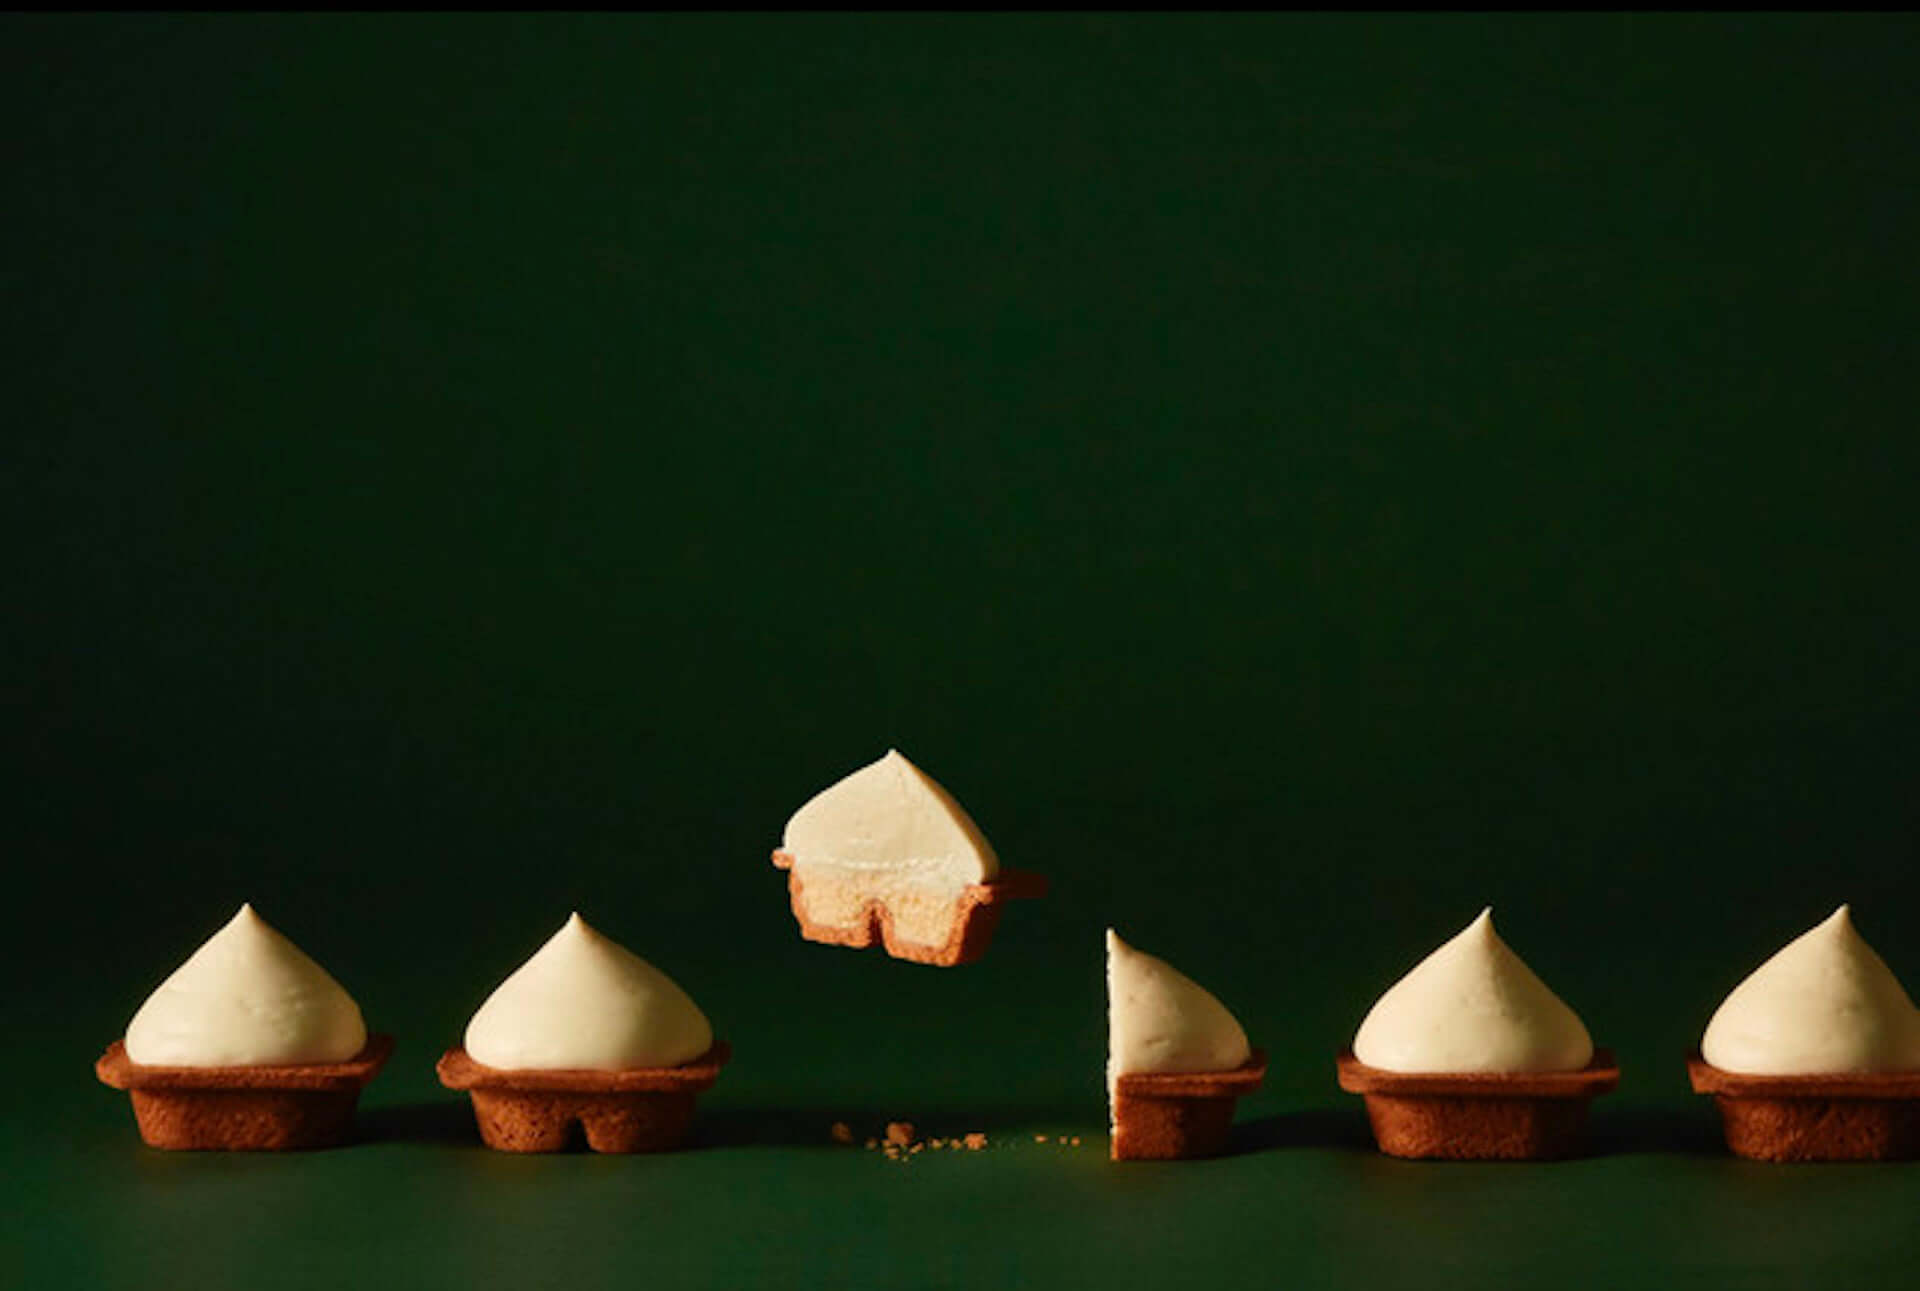 2層の生チーズムースを楽しめる“発明的チーズケーキ”『CHEESE WONDER』が販売数増産！東京・福岡にてポップアップイベントも開催中 gourmet210312_cheesewonder_11-1920x1291